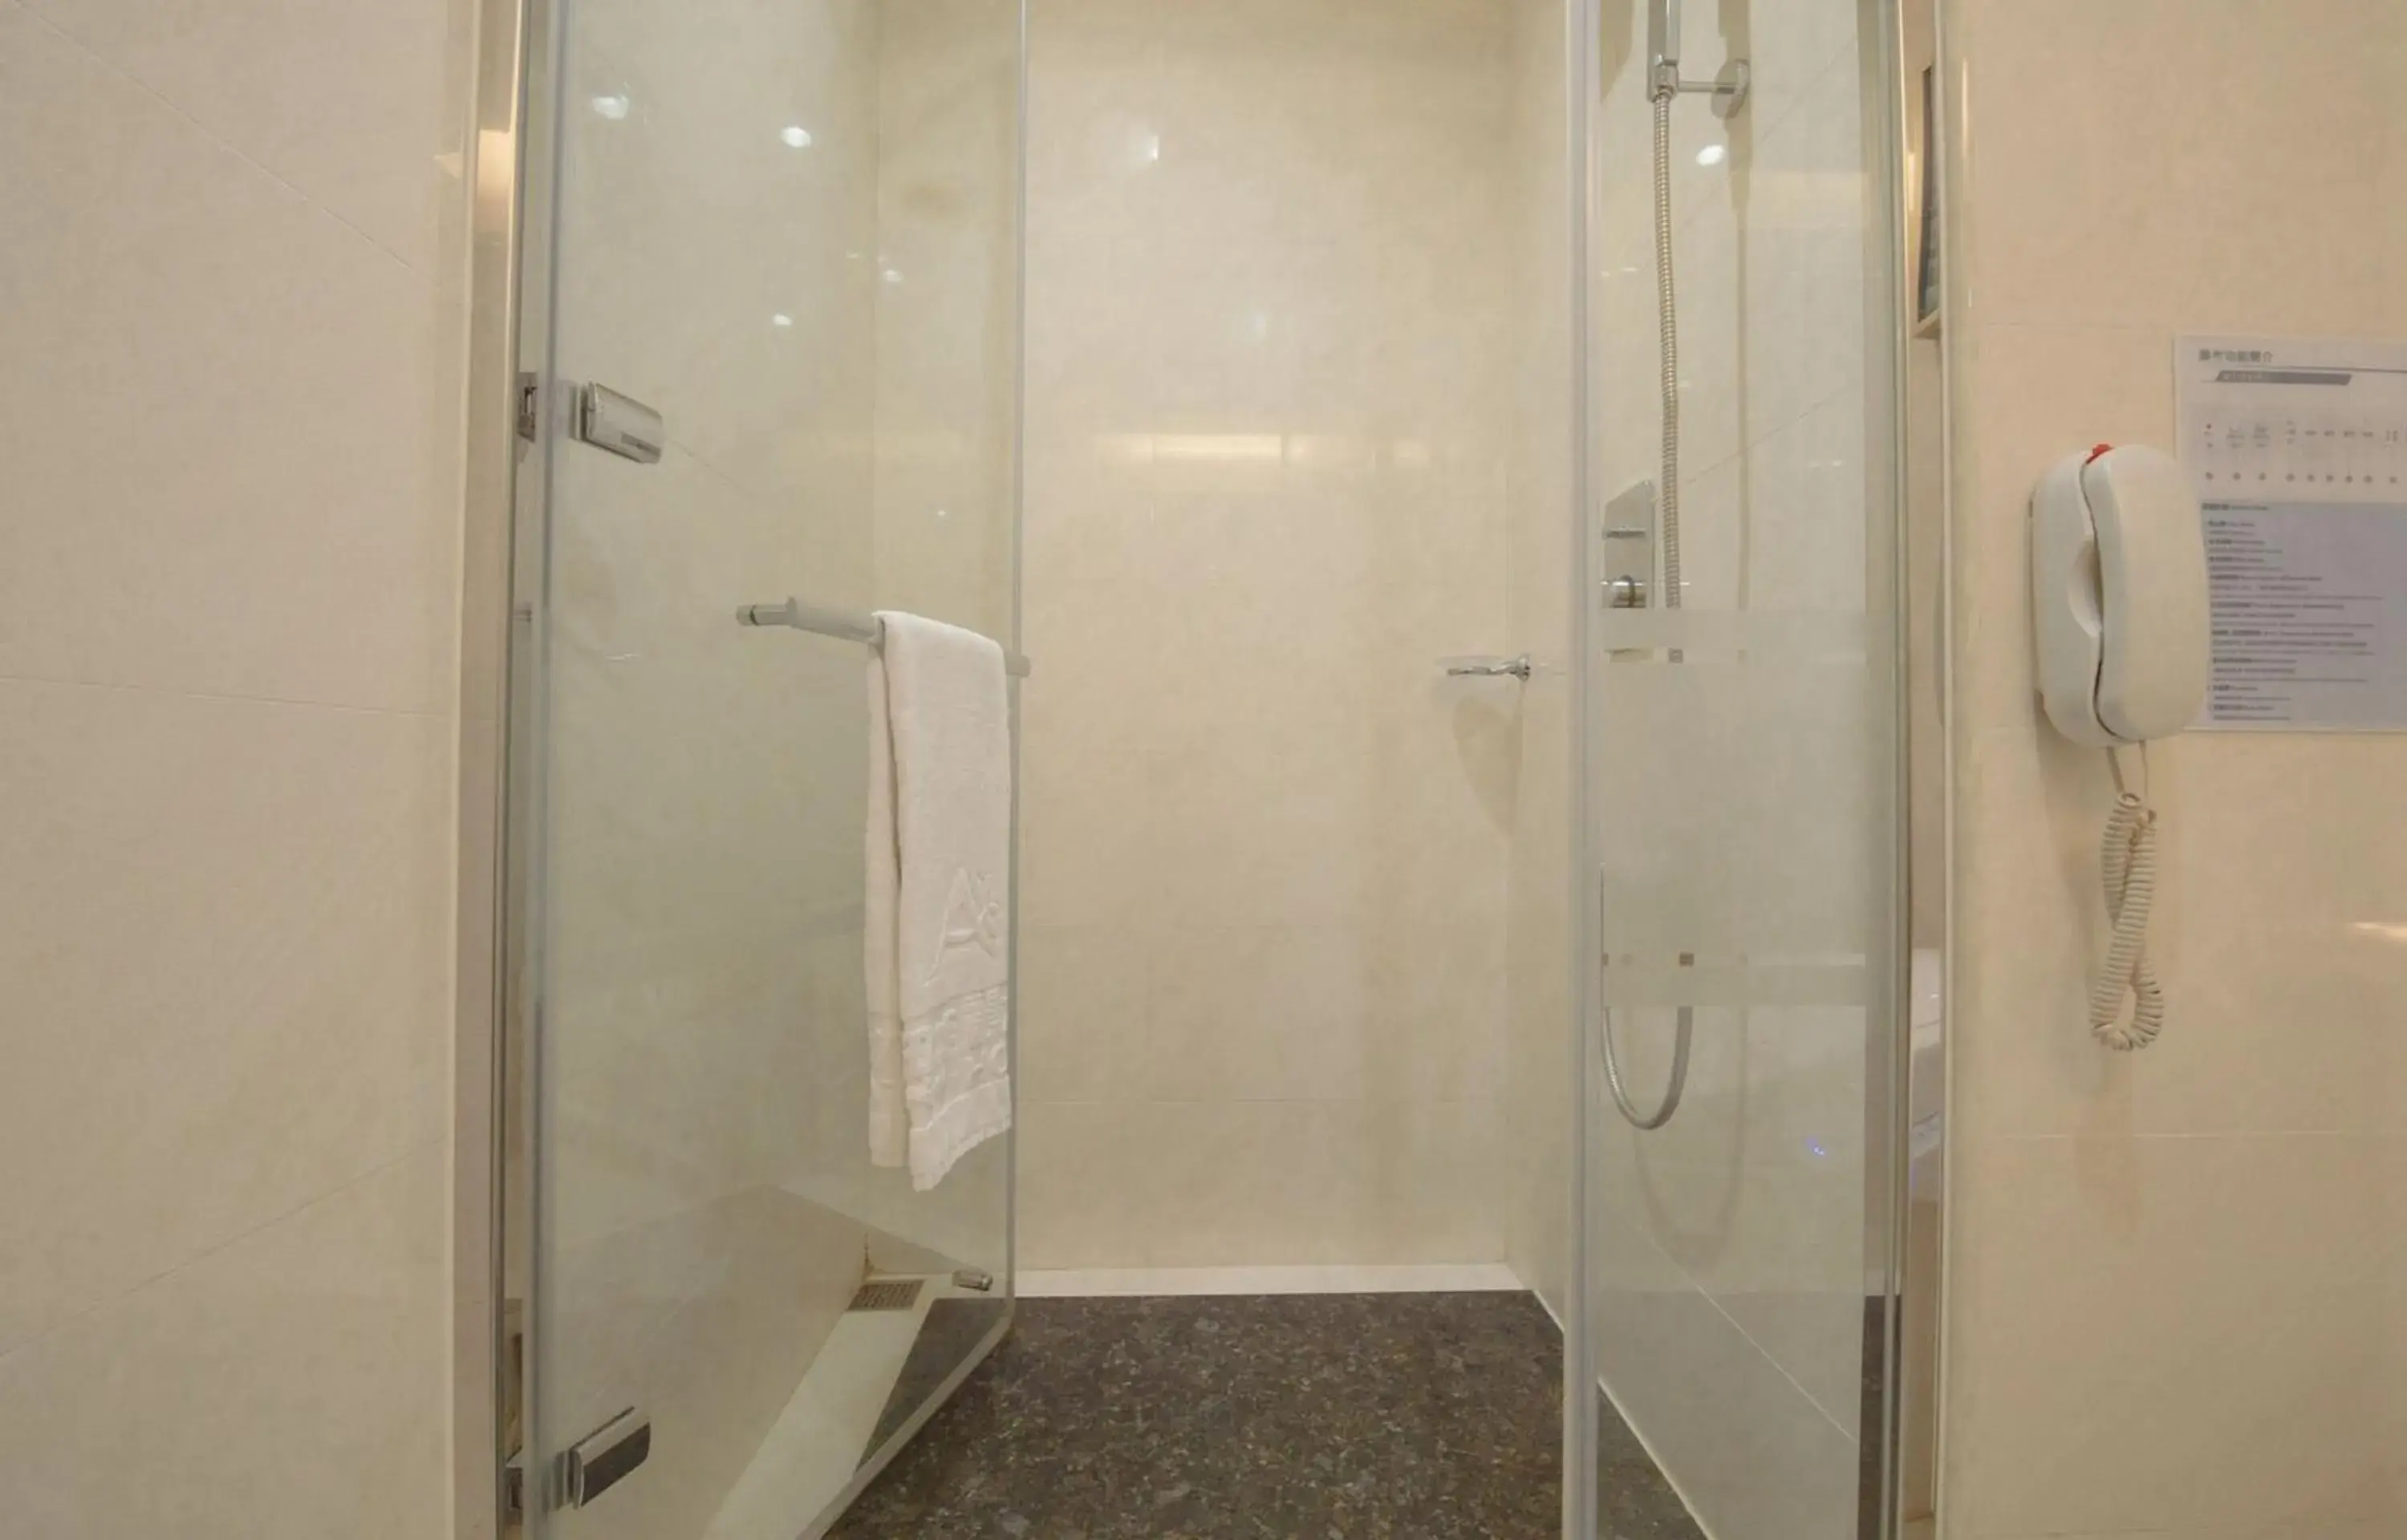 Bathroom in Arsma Hotel